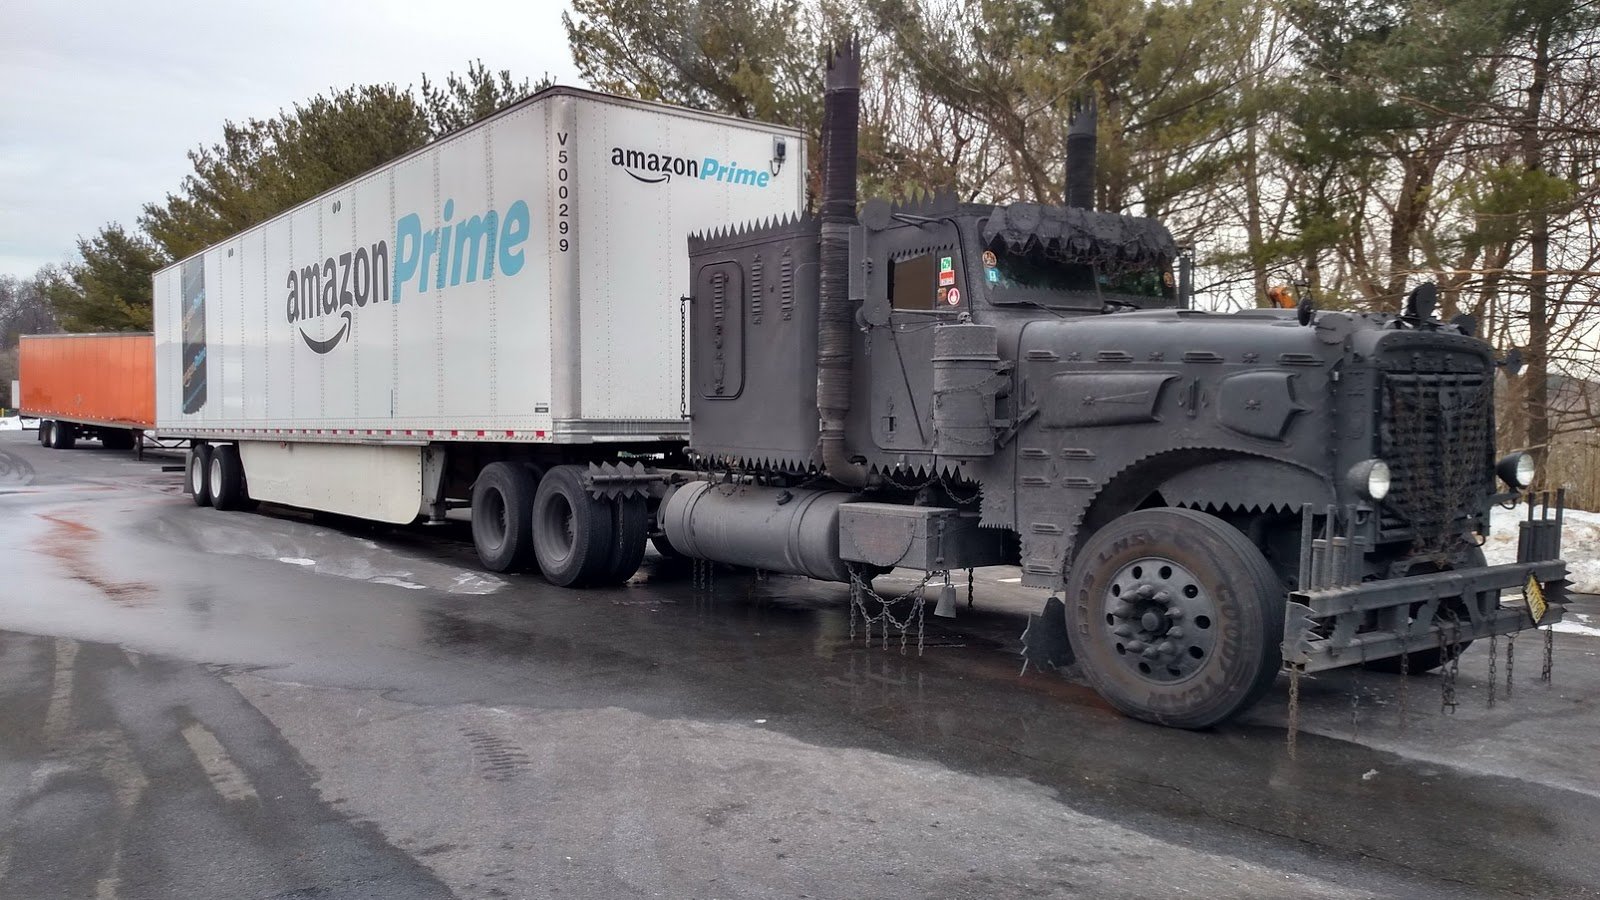 Děsivý tahač s návěsem Amazon Prime